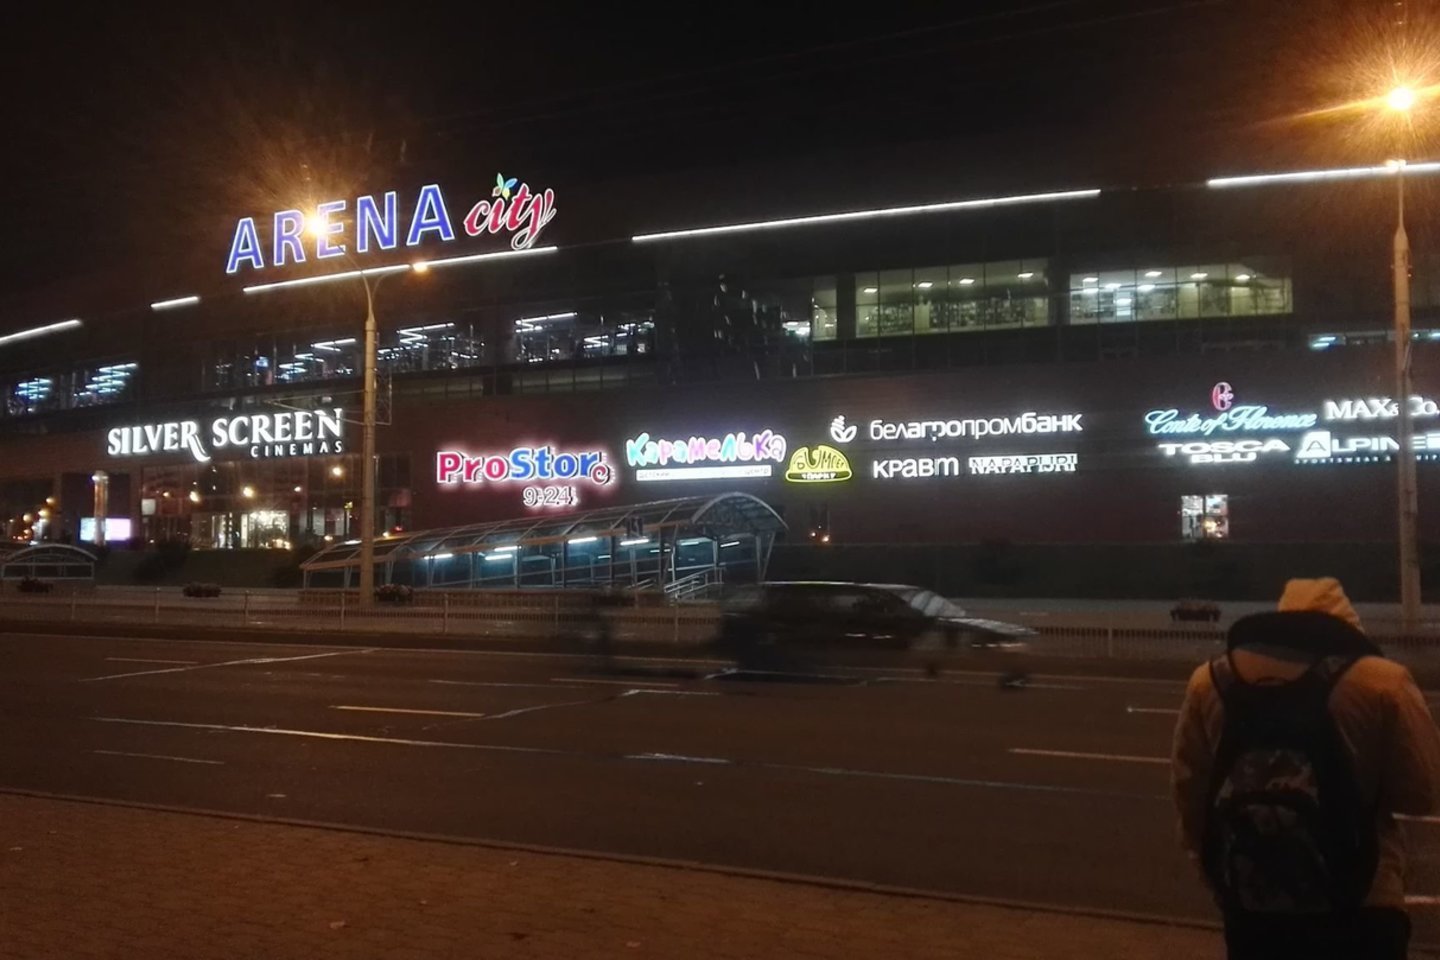  Minsko prekybos centre „Arena City“ įgriuvo lubos. Apie tai praneša Baltarusijos žiniasklaida.<br> E.Grižibauskienės nuotr.